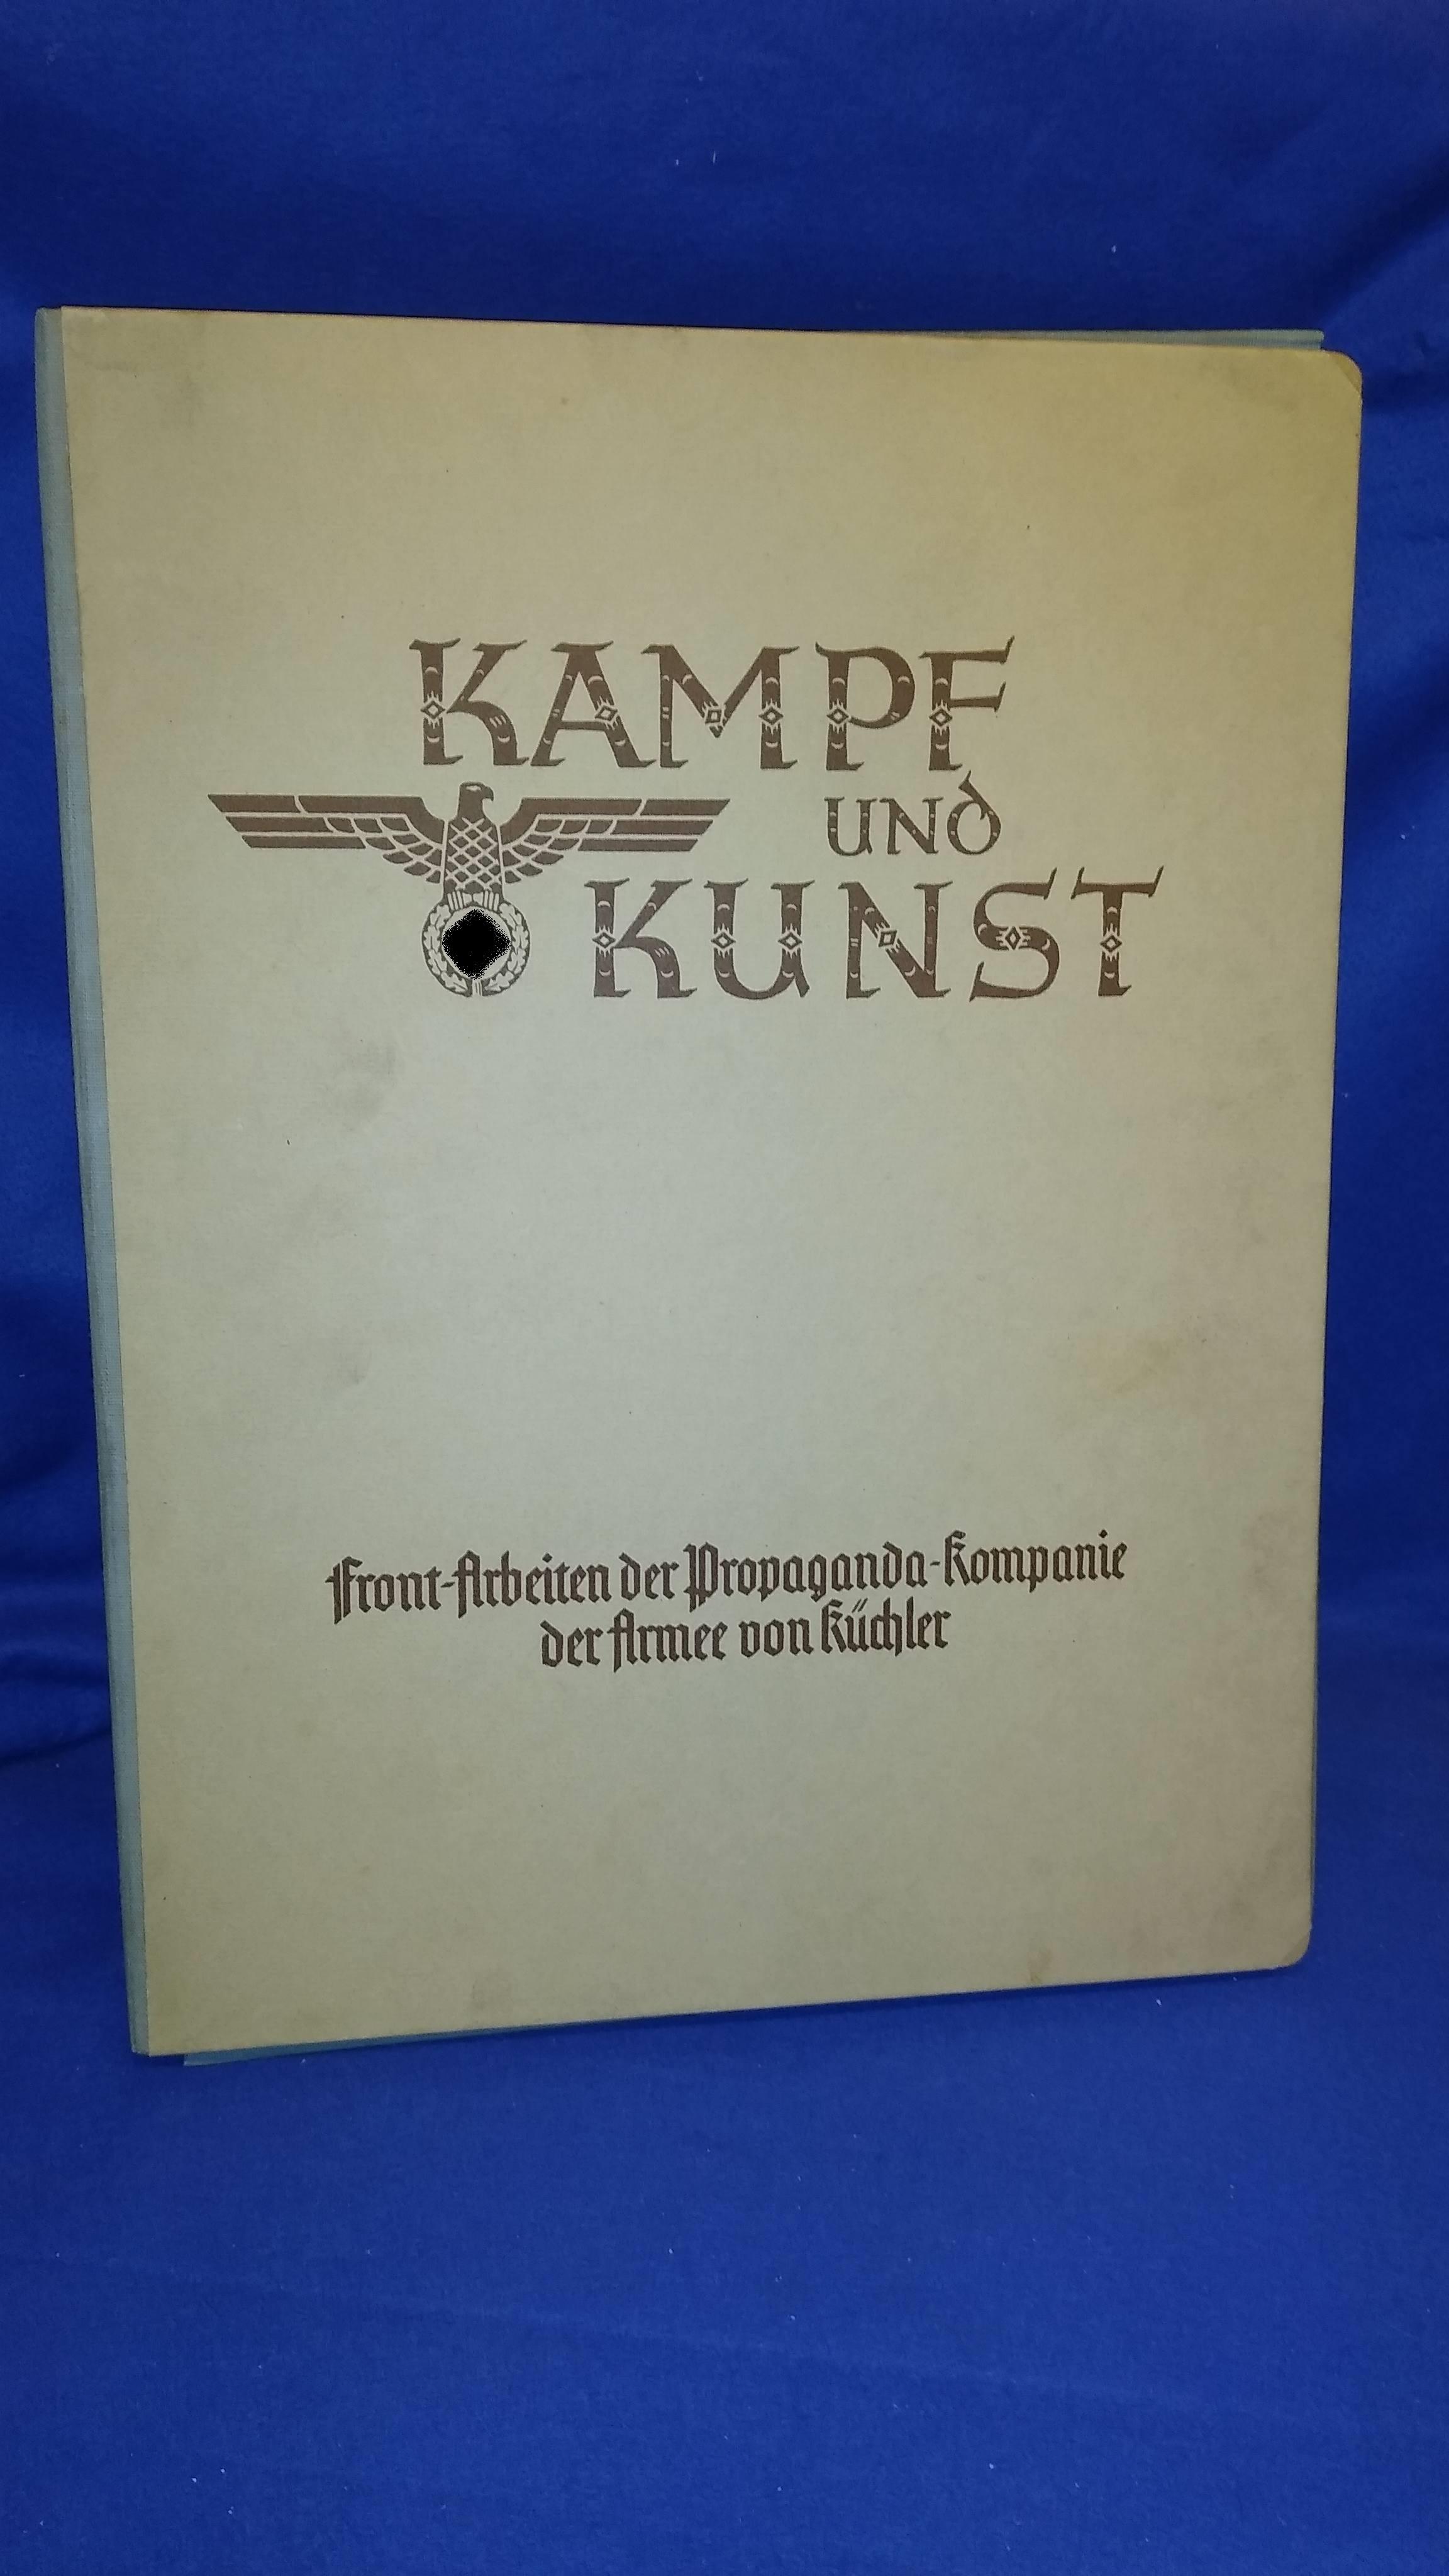 Front-Arbeiten der Propaganda-Kompanie von Küchler. Flügelmappe "Kampf und Kunst" mit 60 Tafeln s/w und farbig